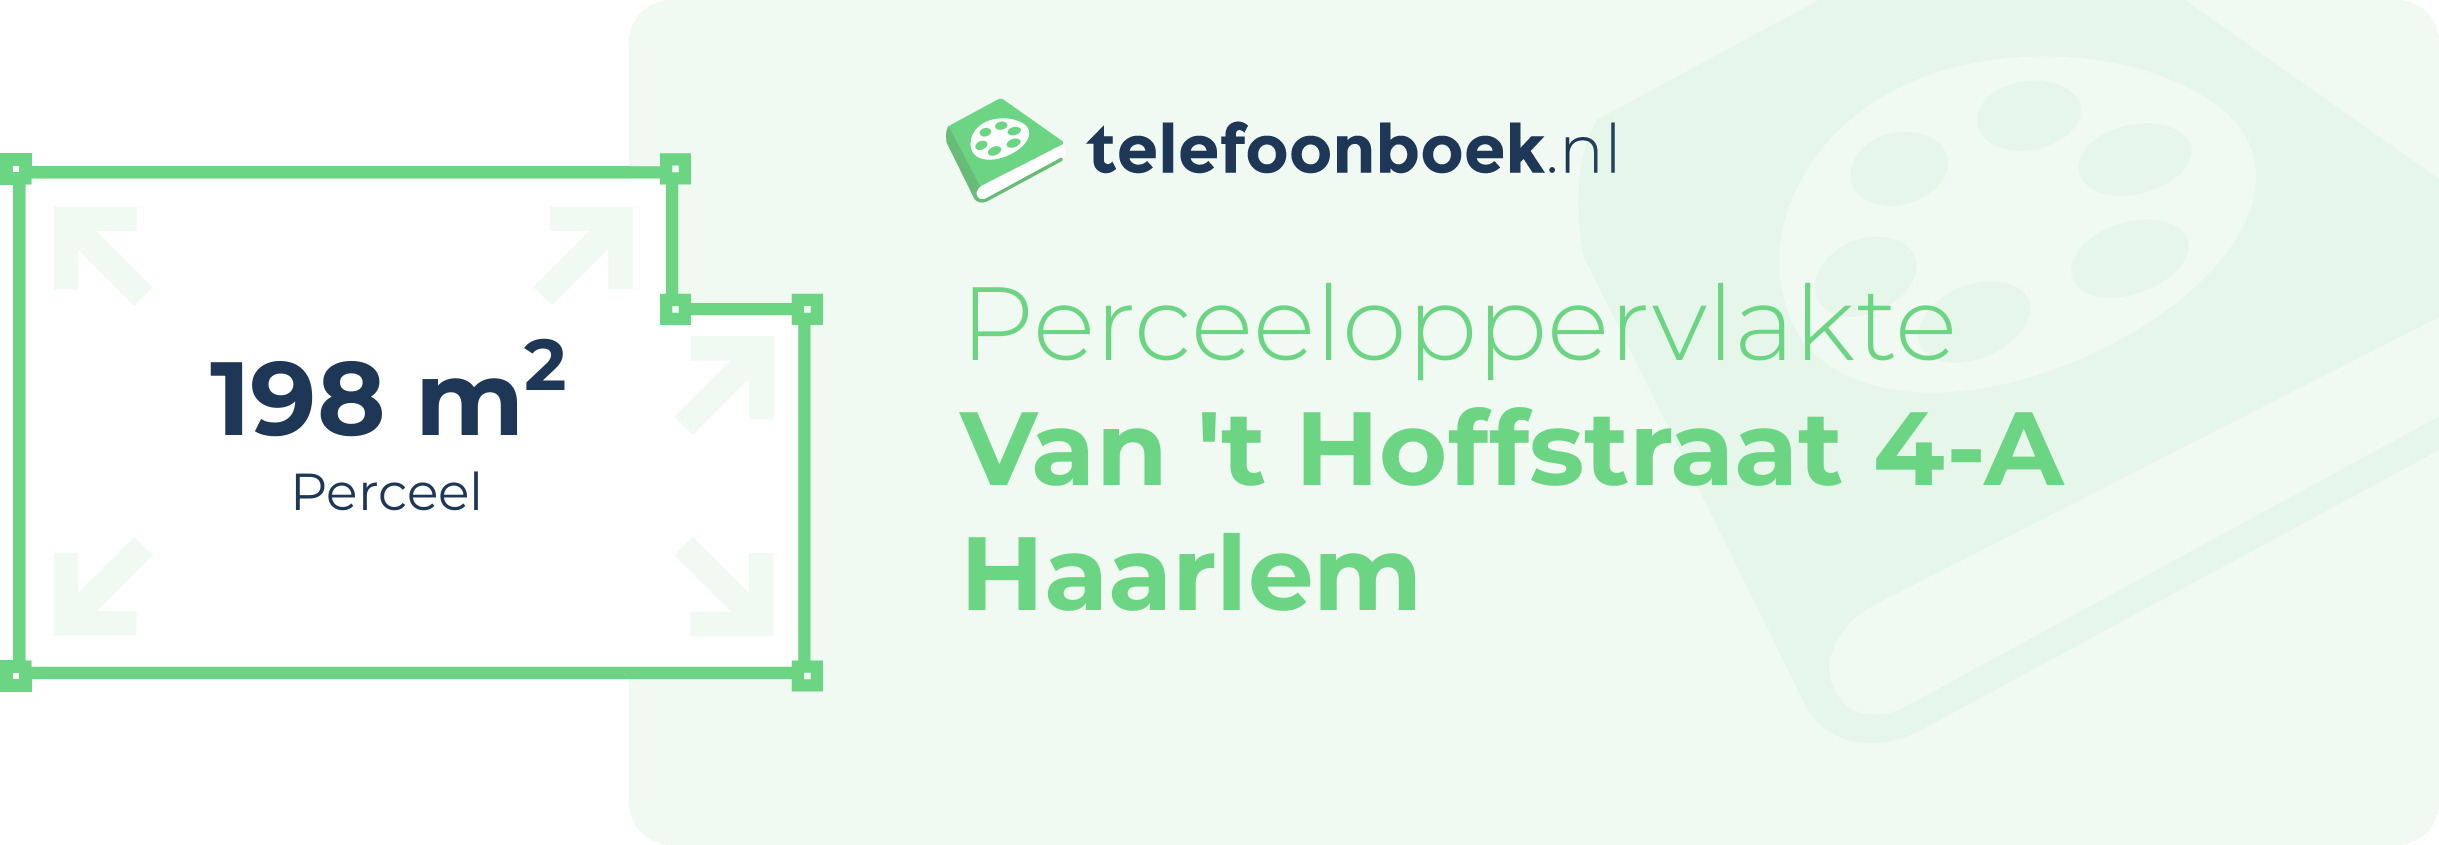 Perceeloppervlakte Van 't Hoffstraat 4-A Haarlem